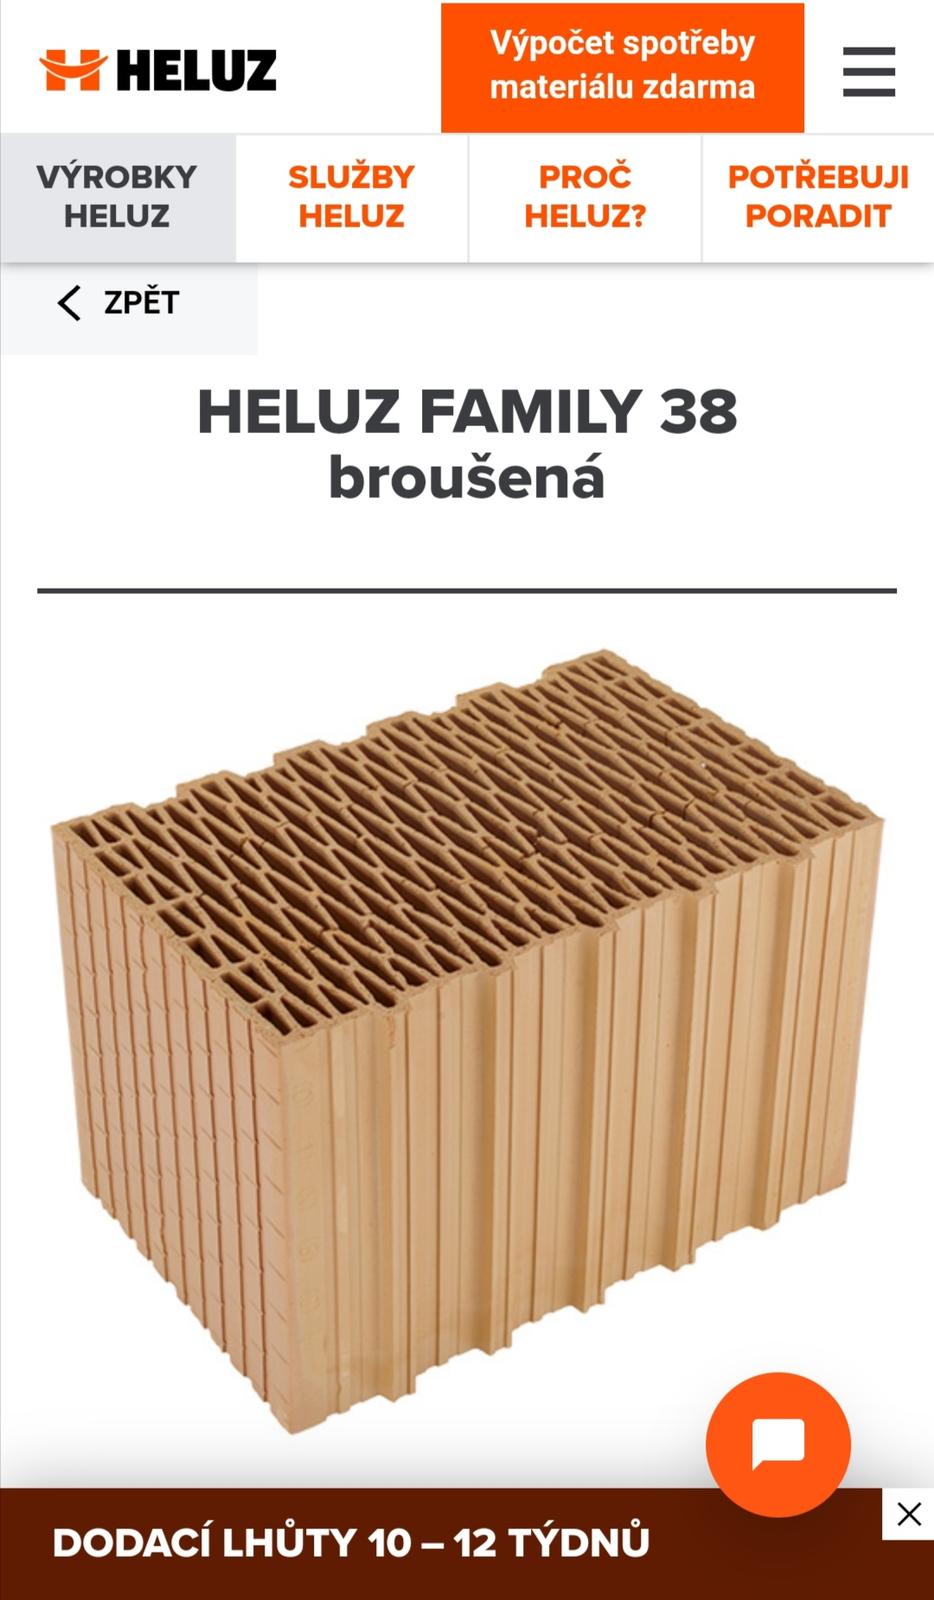 Heluz family broušená 38 - Obrázek č. 1